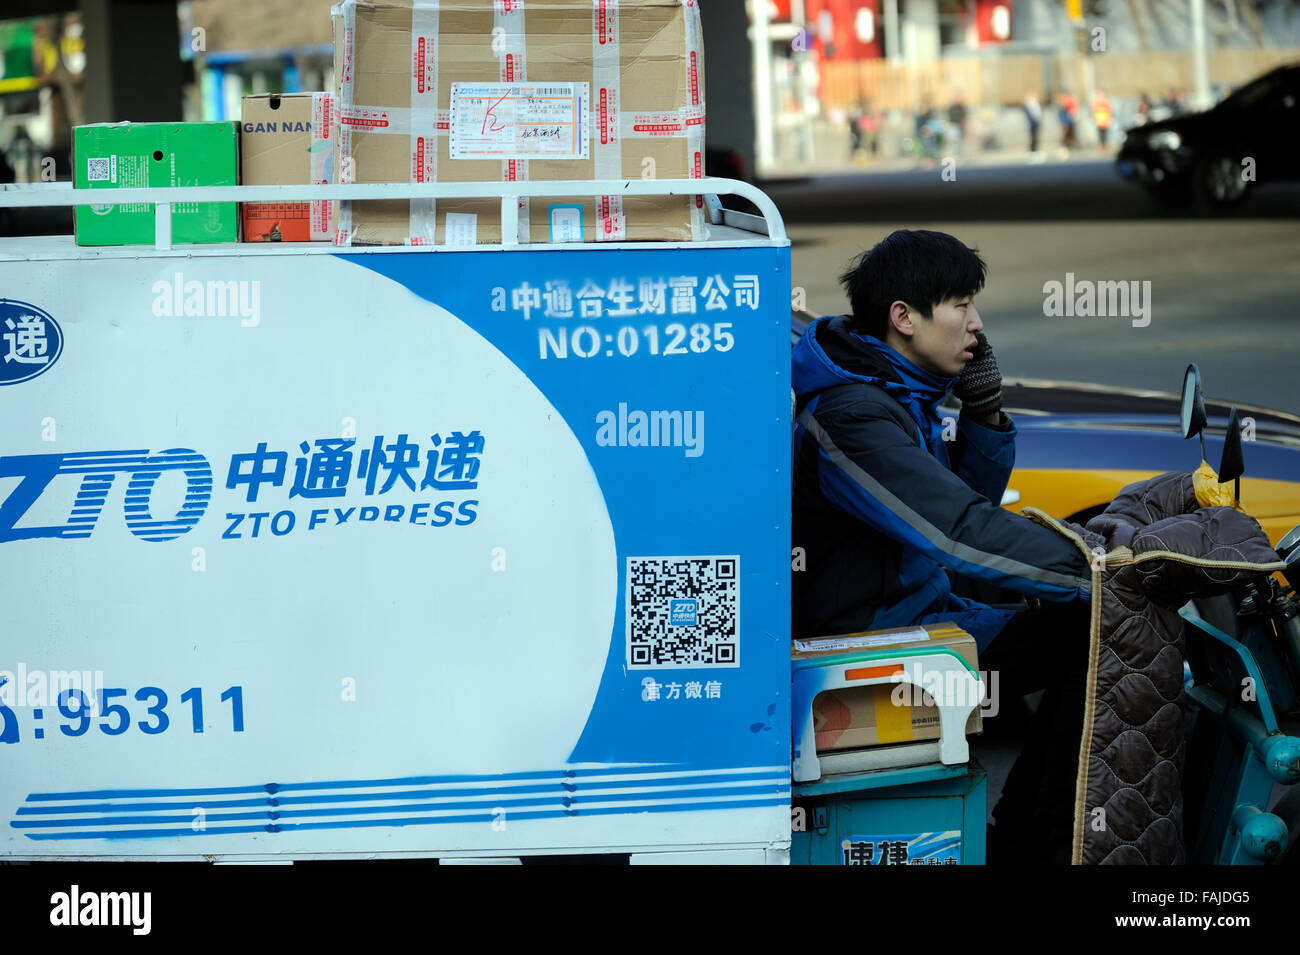 Einem Elektro-Dreirad für Online-shopping express-Lieferung-shuttles auf der Straße in Peking, China. Stockfoto